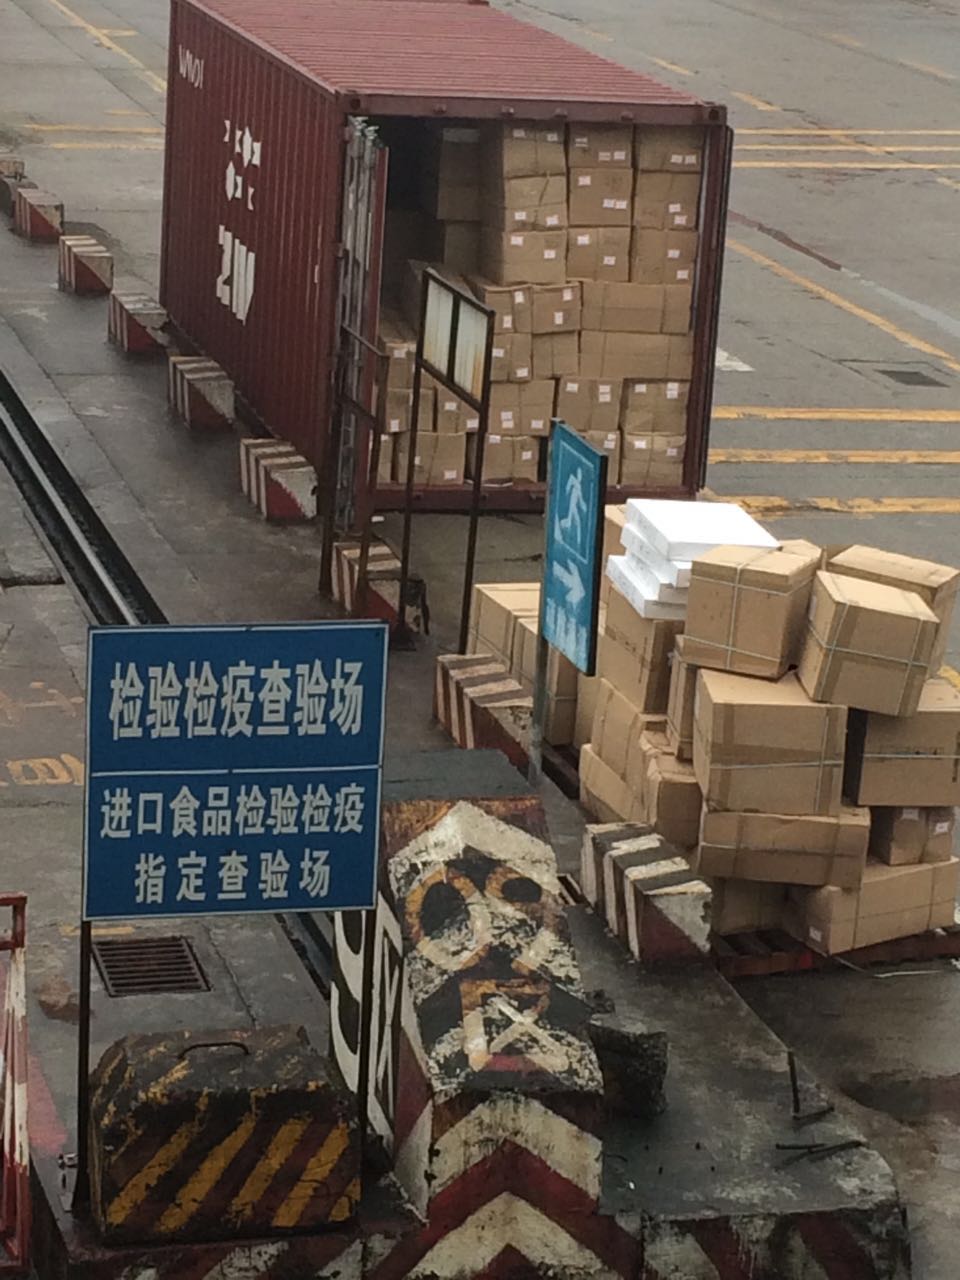 广州集司港进口食品报关 广州乌冲港整柜散货进口食品清关 正规流程进口